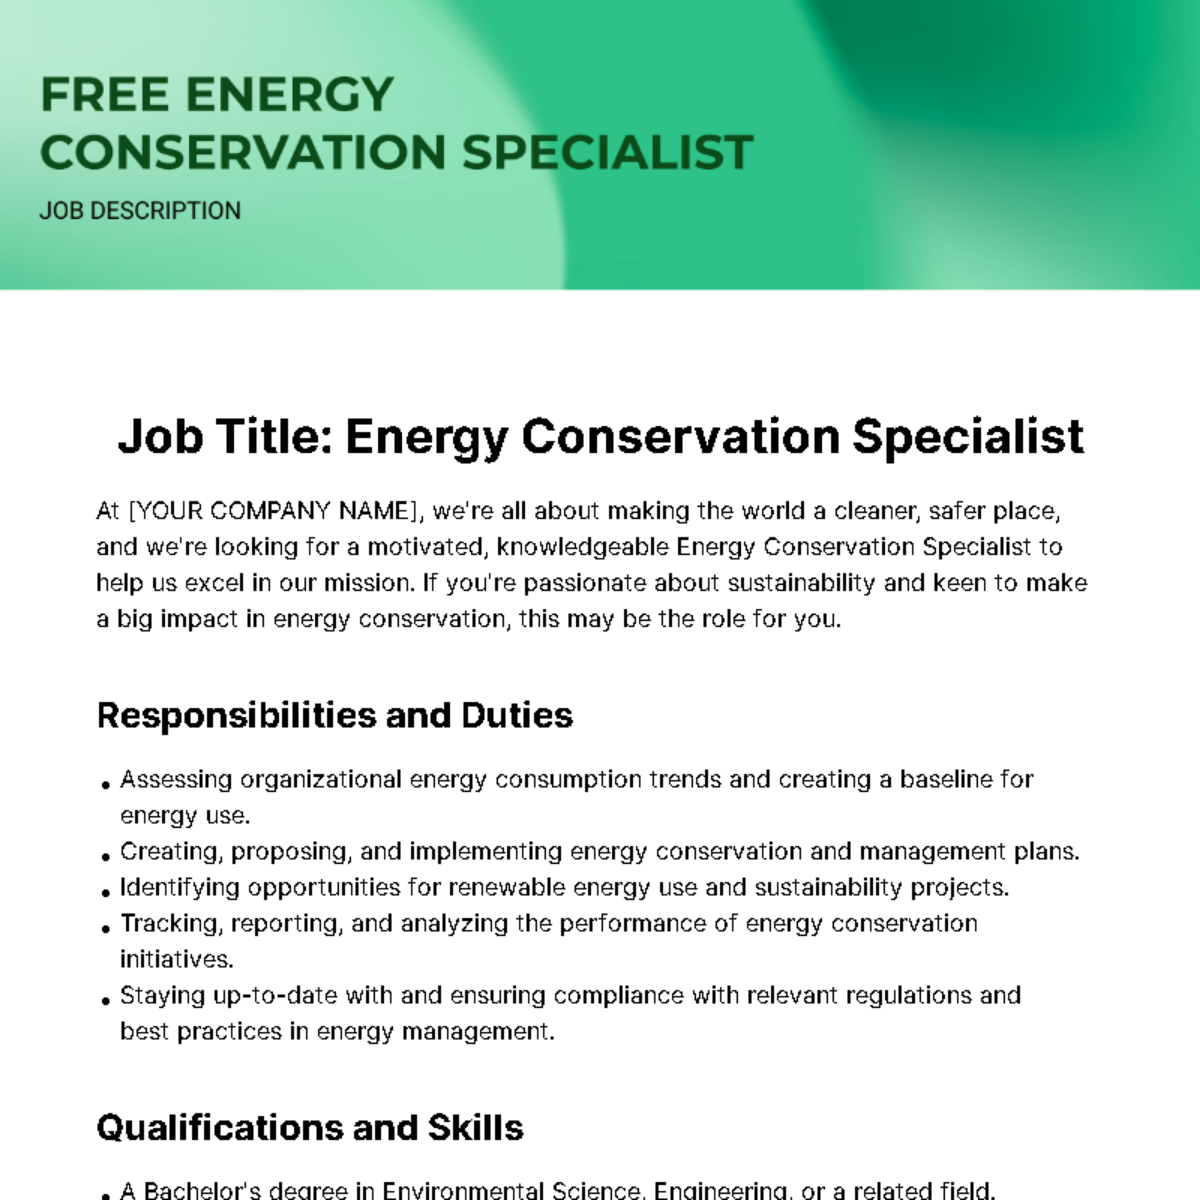 Energy Conservation Specialist Job Description Template